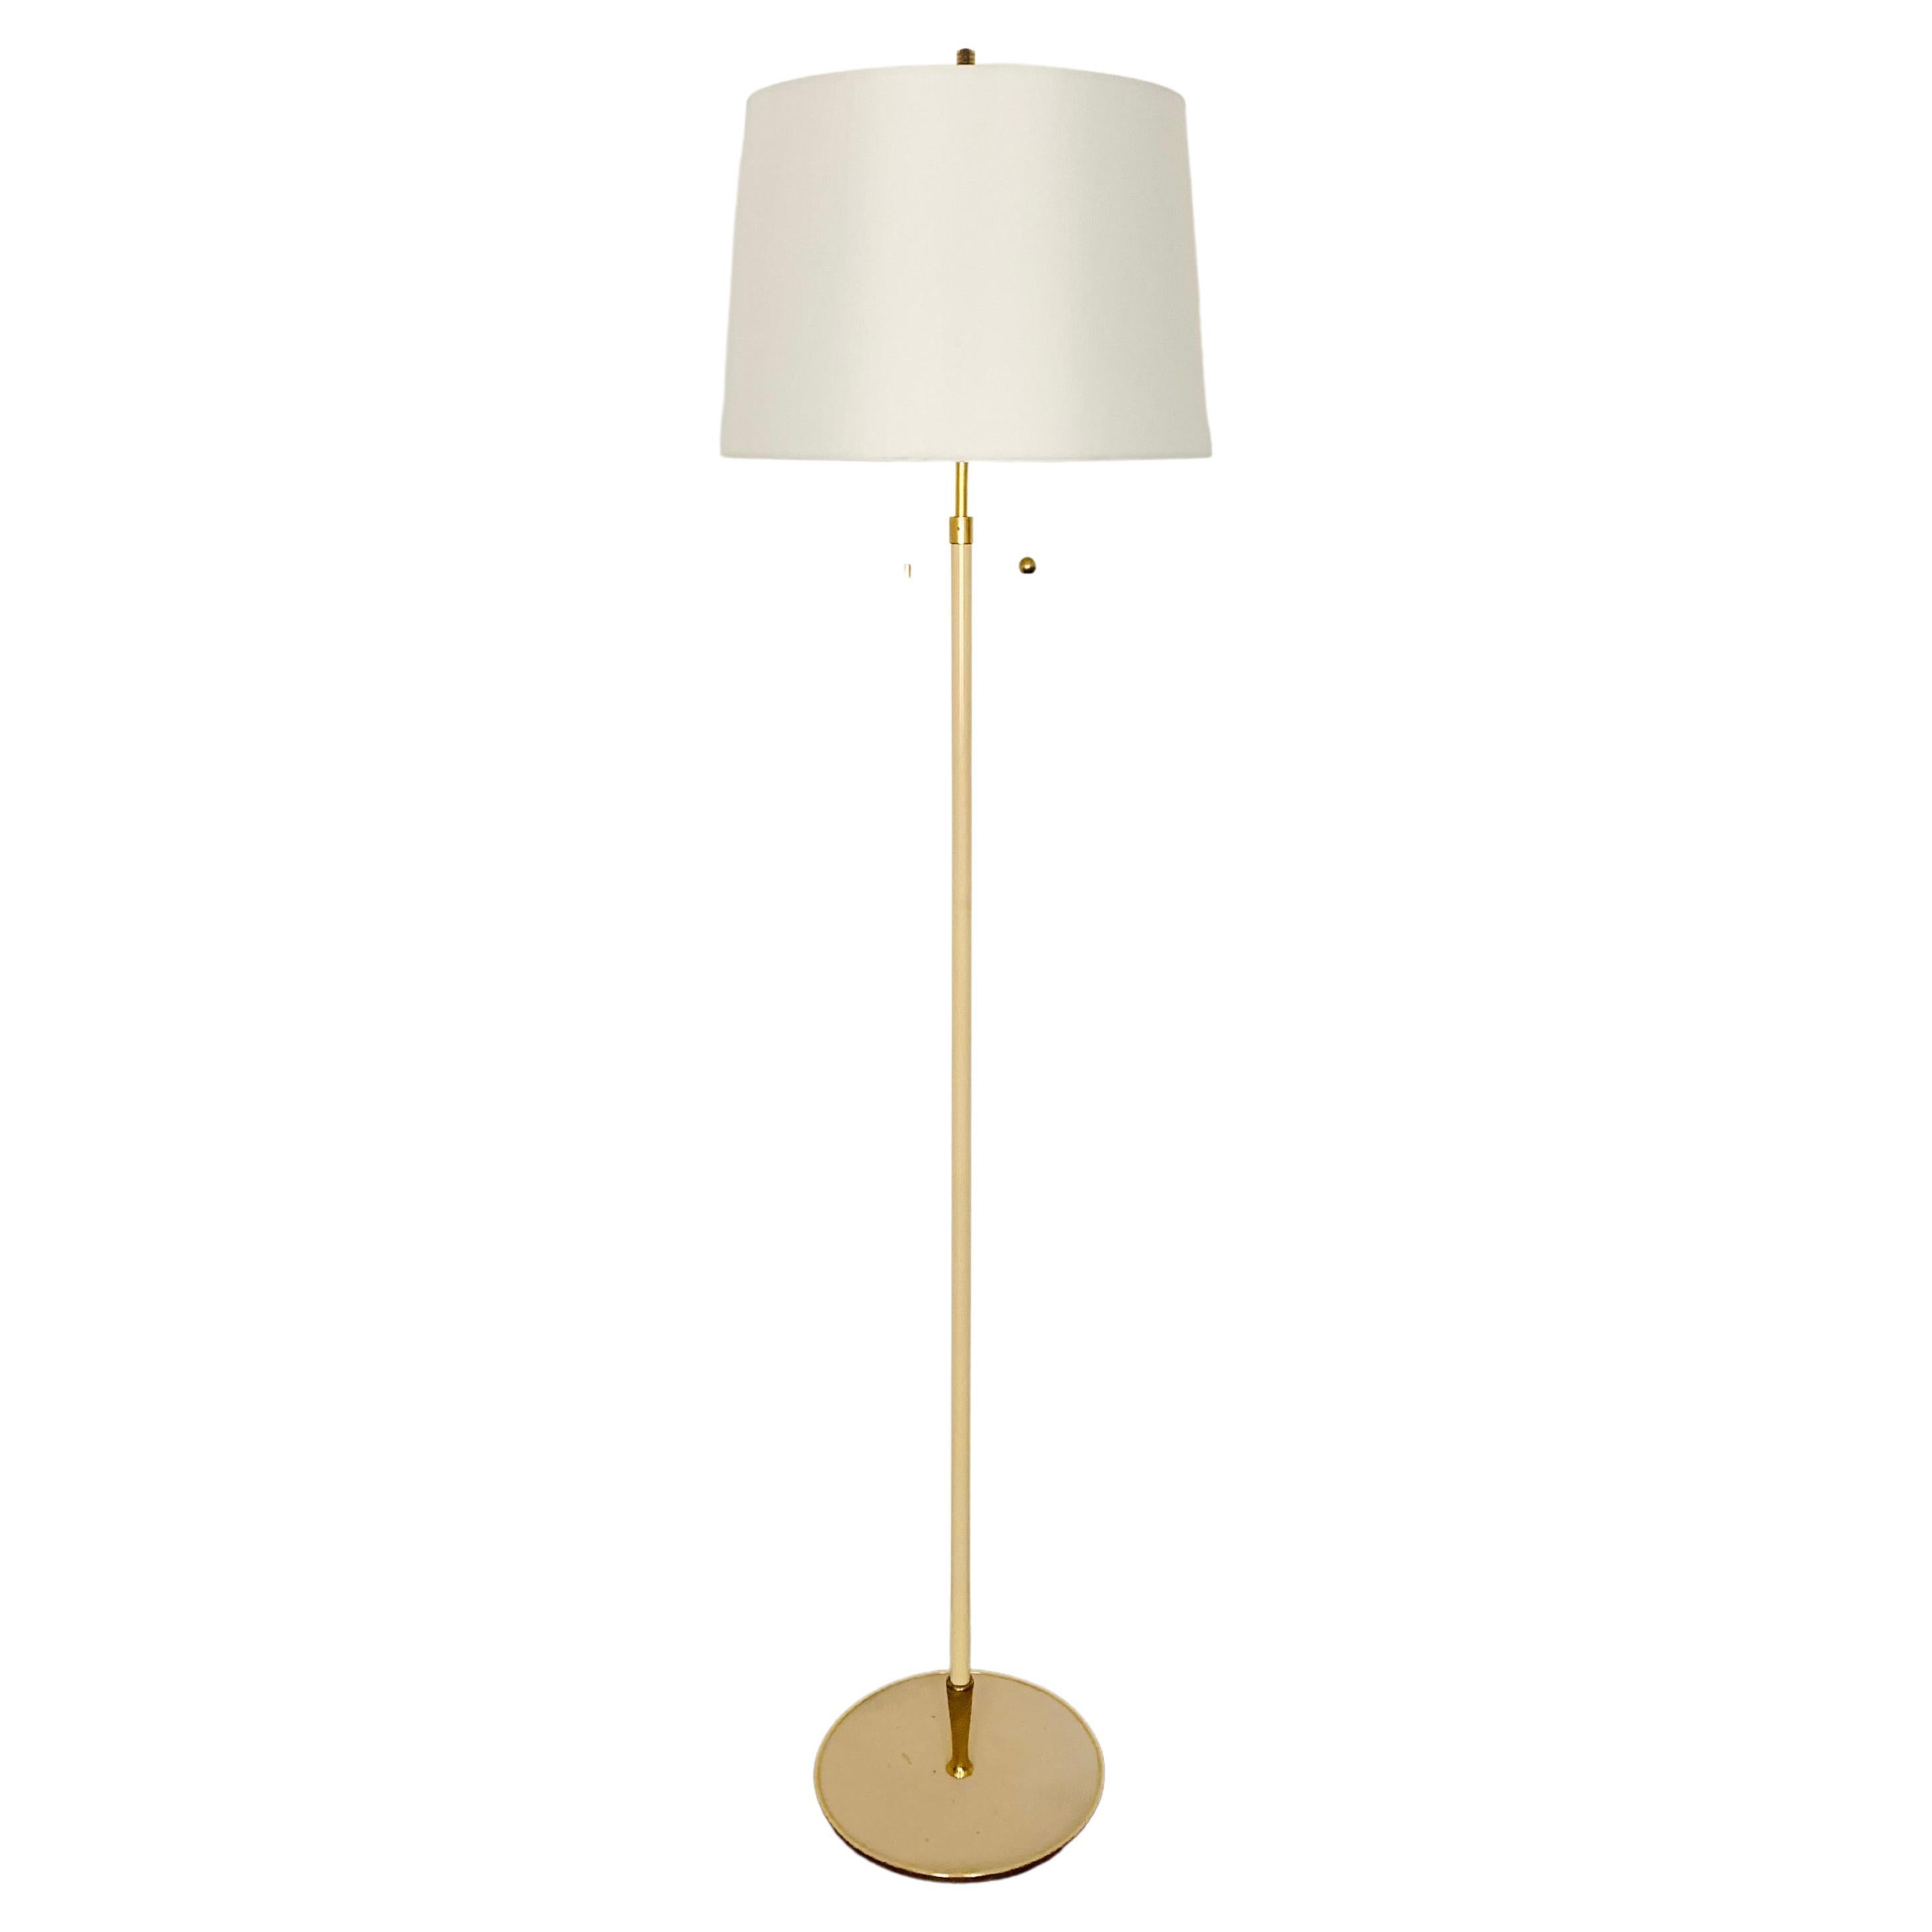 Brass Floor Lamp by Vereinigte Werkstätten